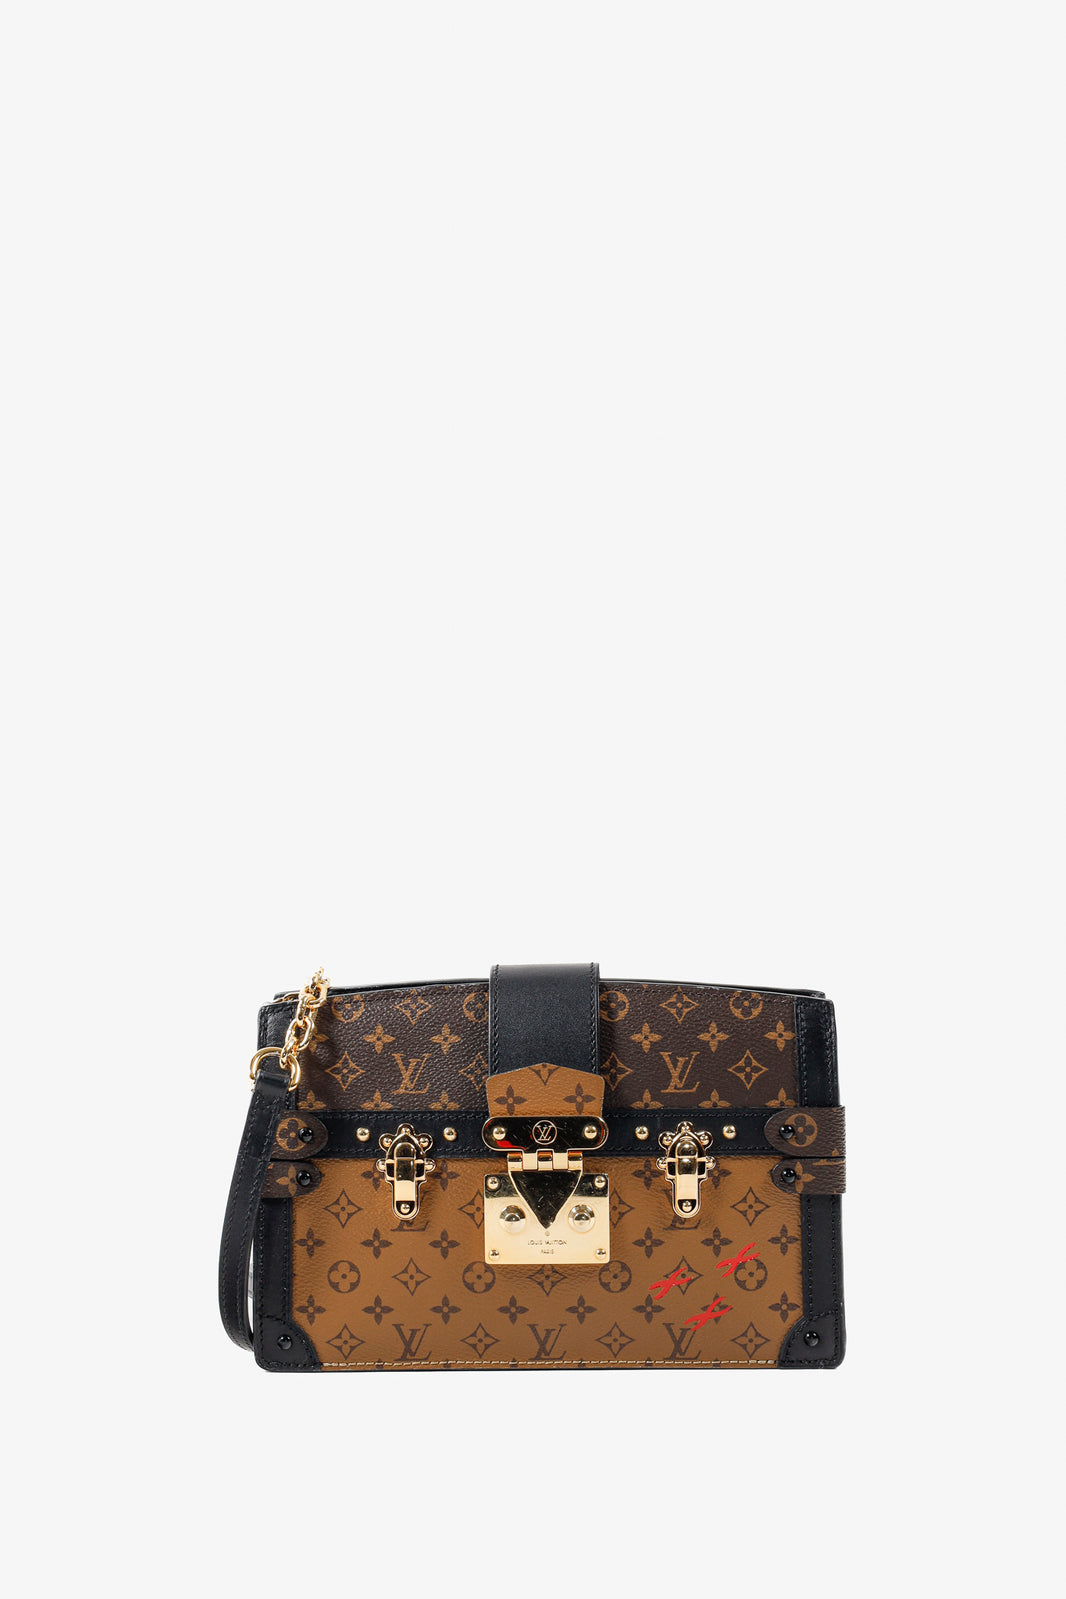 Louis Vuitton Reverse Monogram Canvas Trunk Clutch Bag